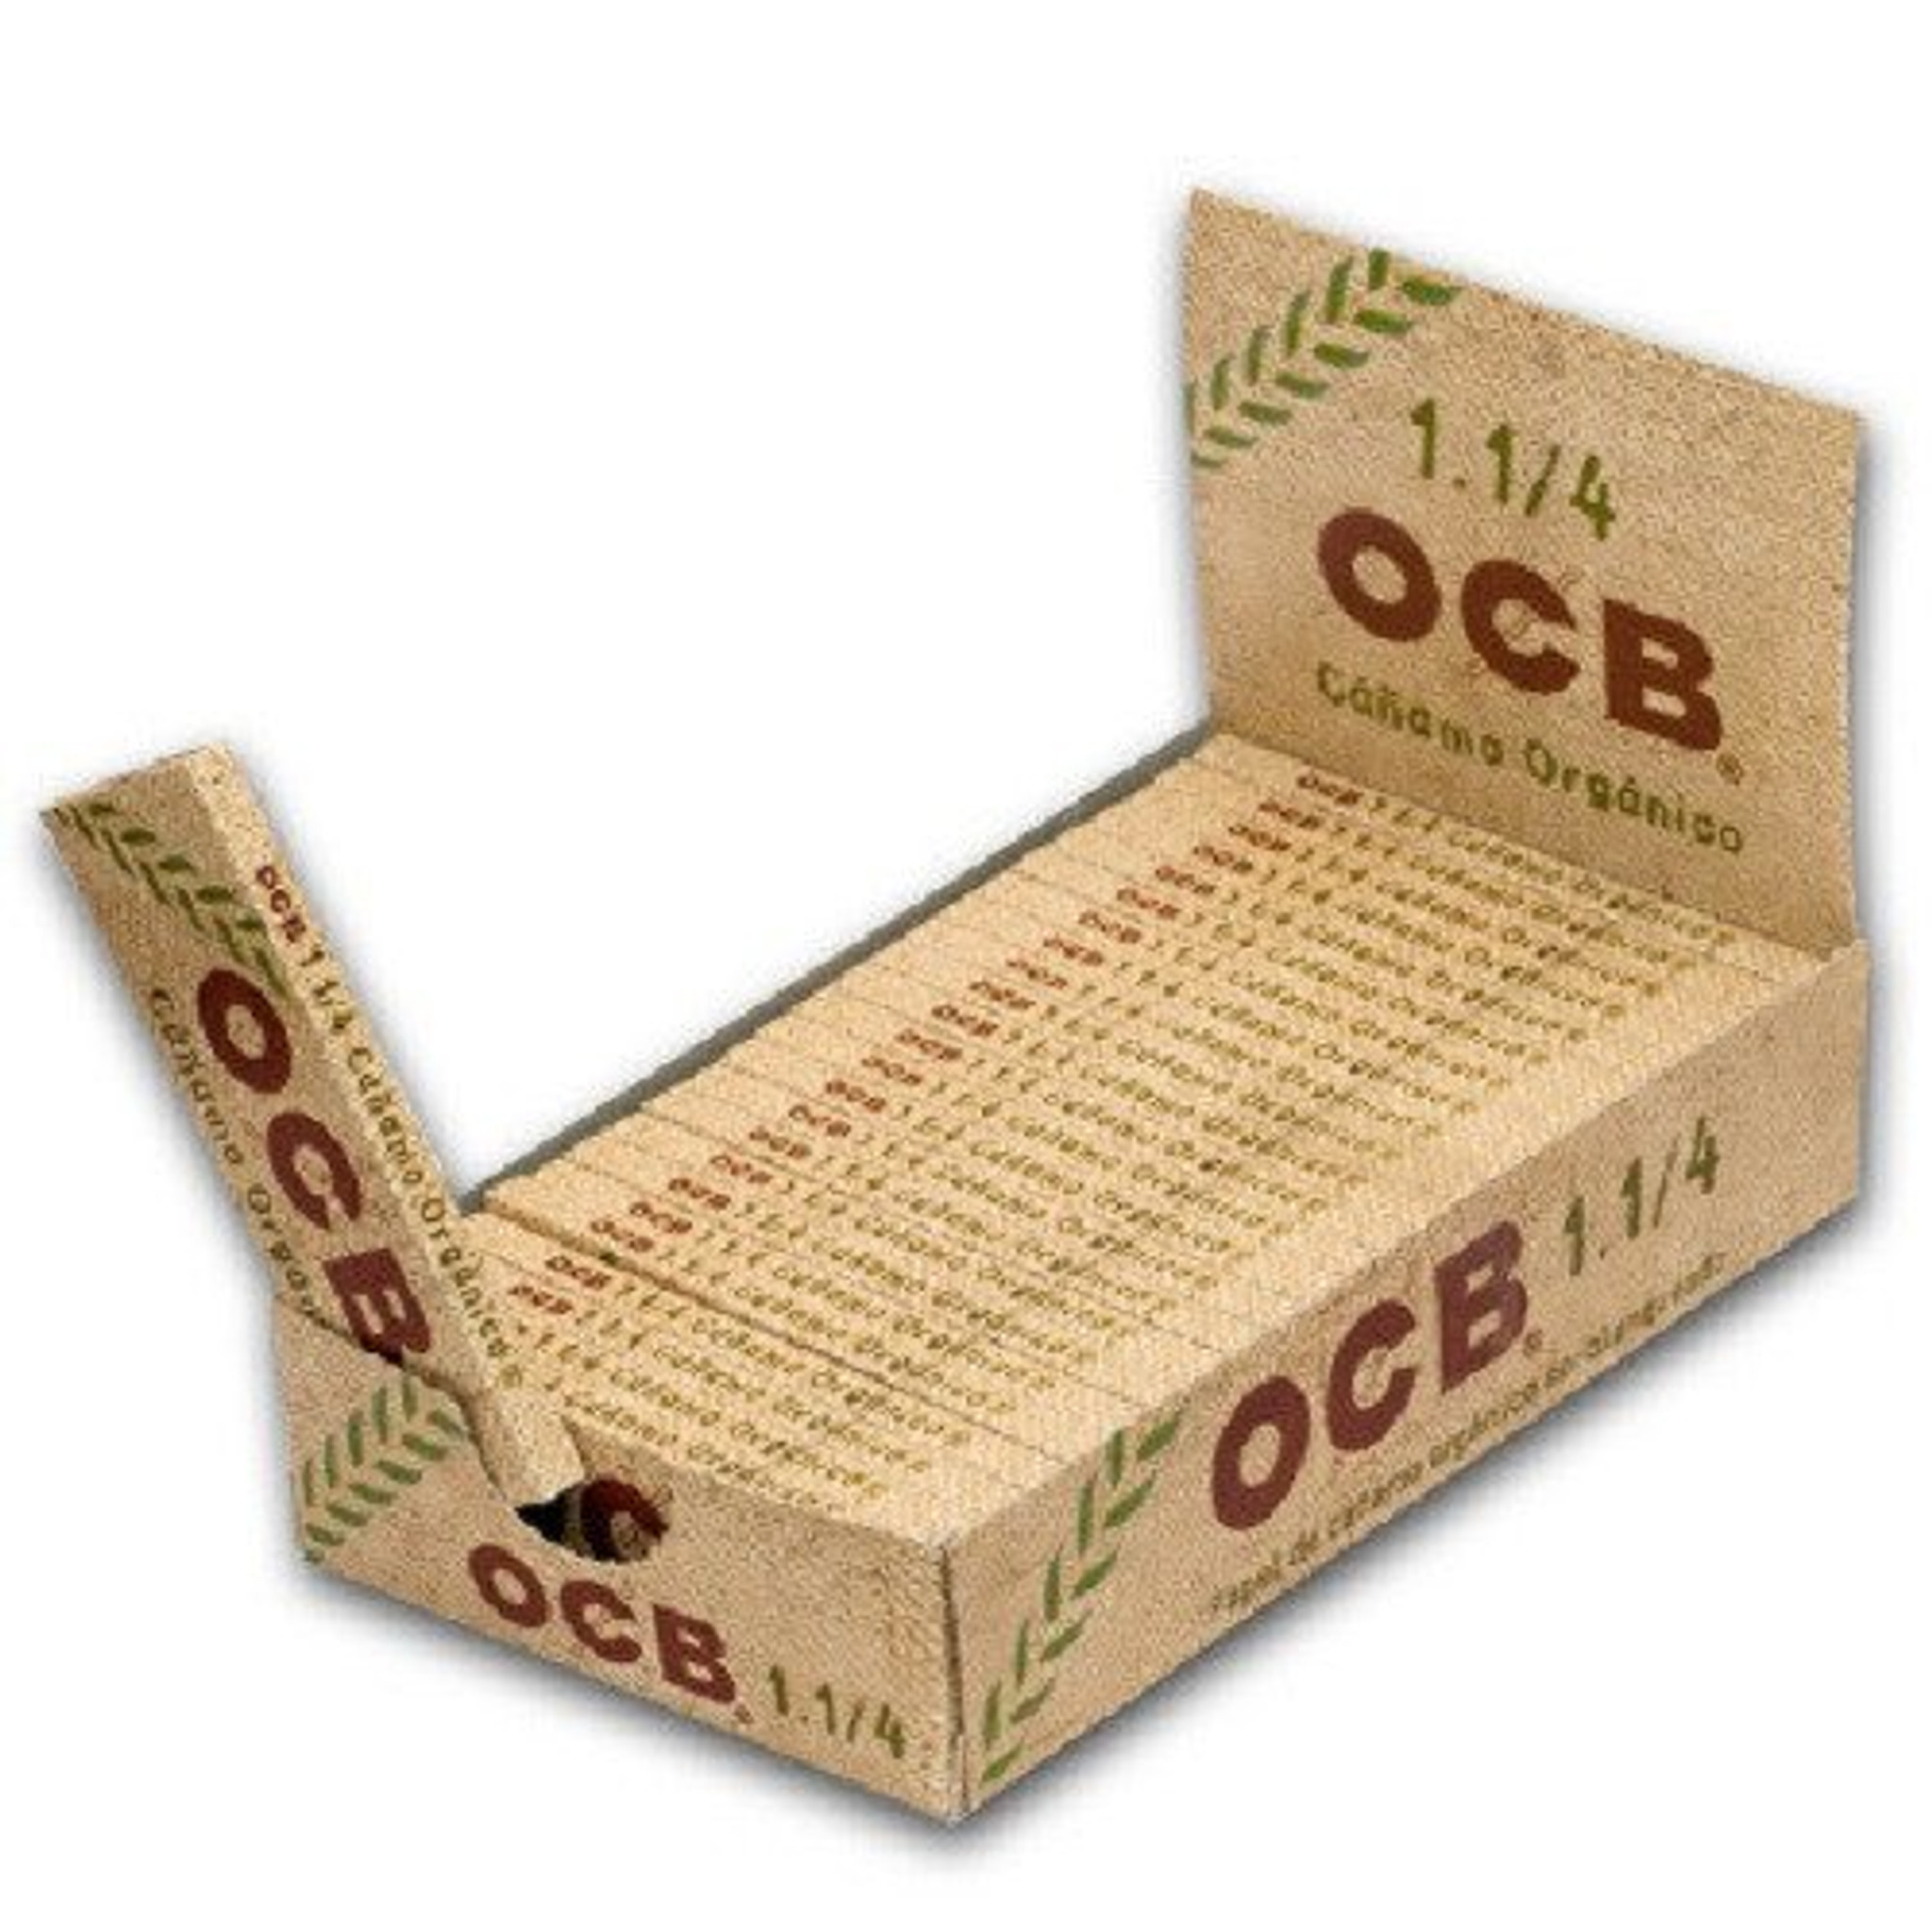 Бумага 1 1 4. Бумага сигаретная OCB Organic Hemp 50шт. Бумага для самокруток OCB 8. OCB бумага 1/4. Бумага для самокруток OCB (50).